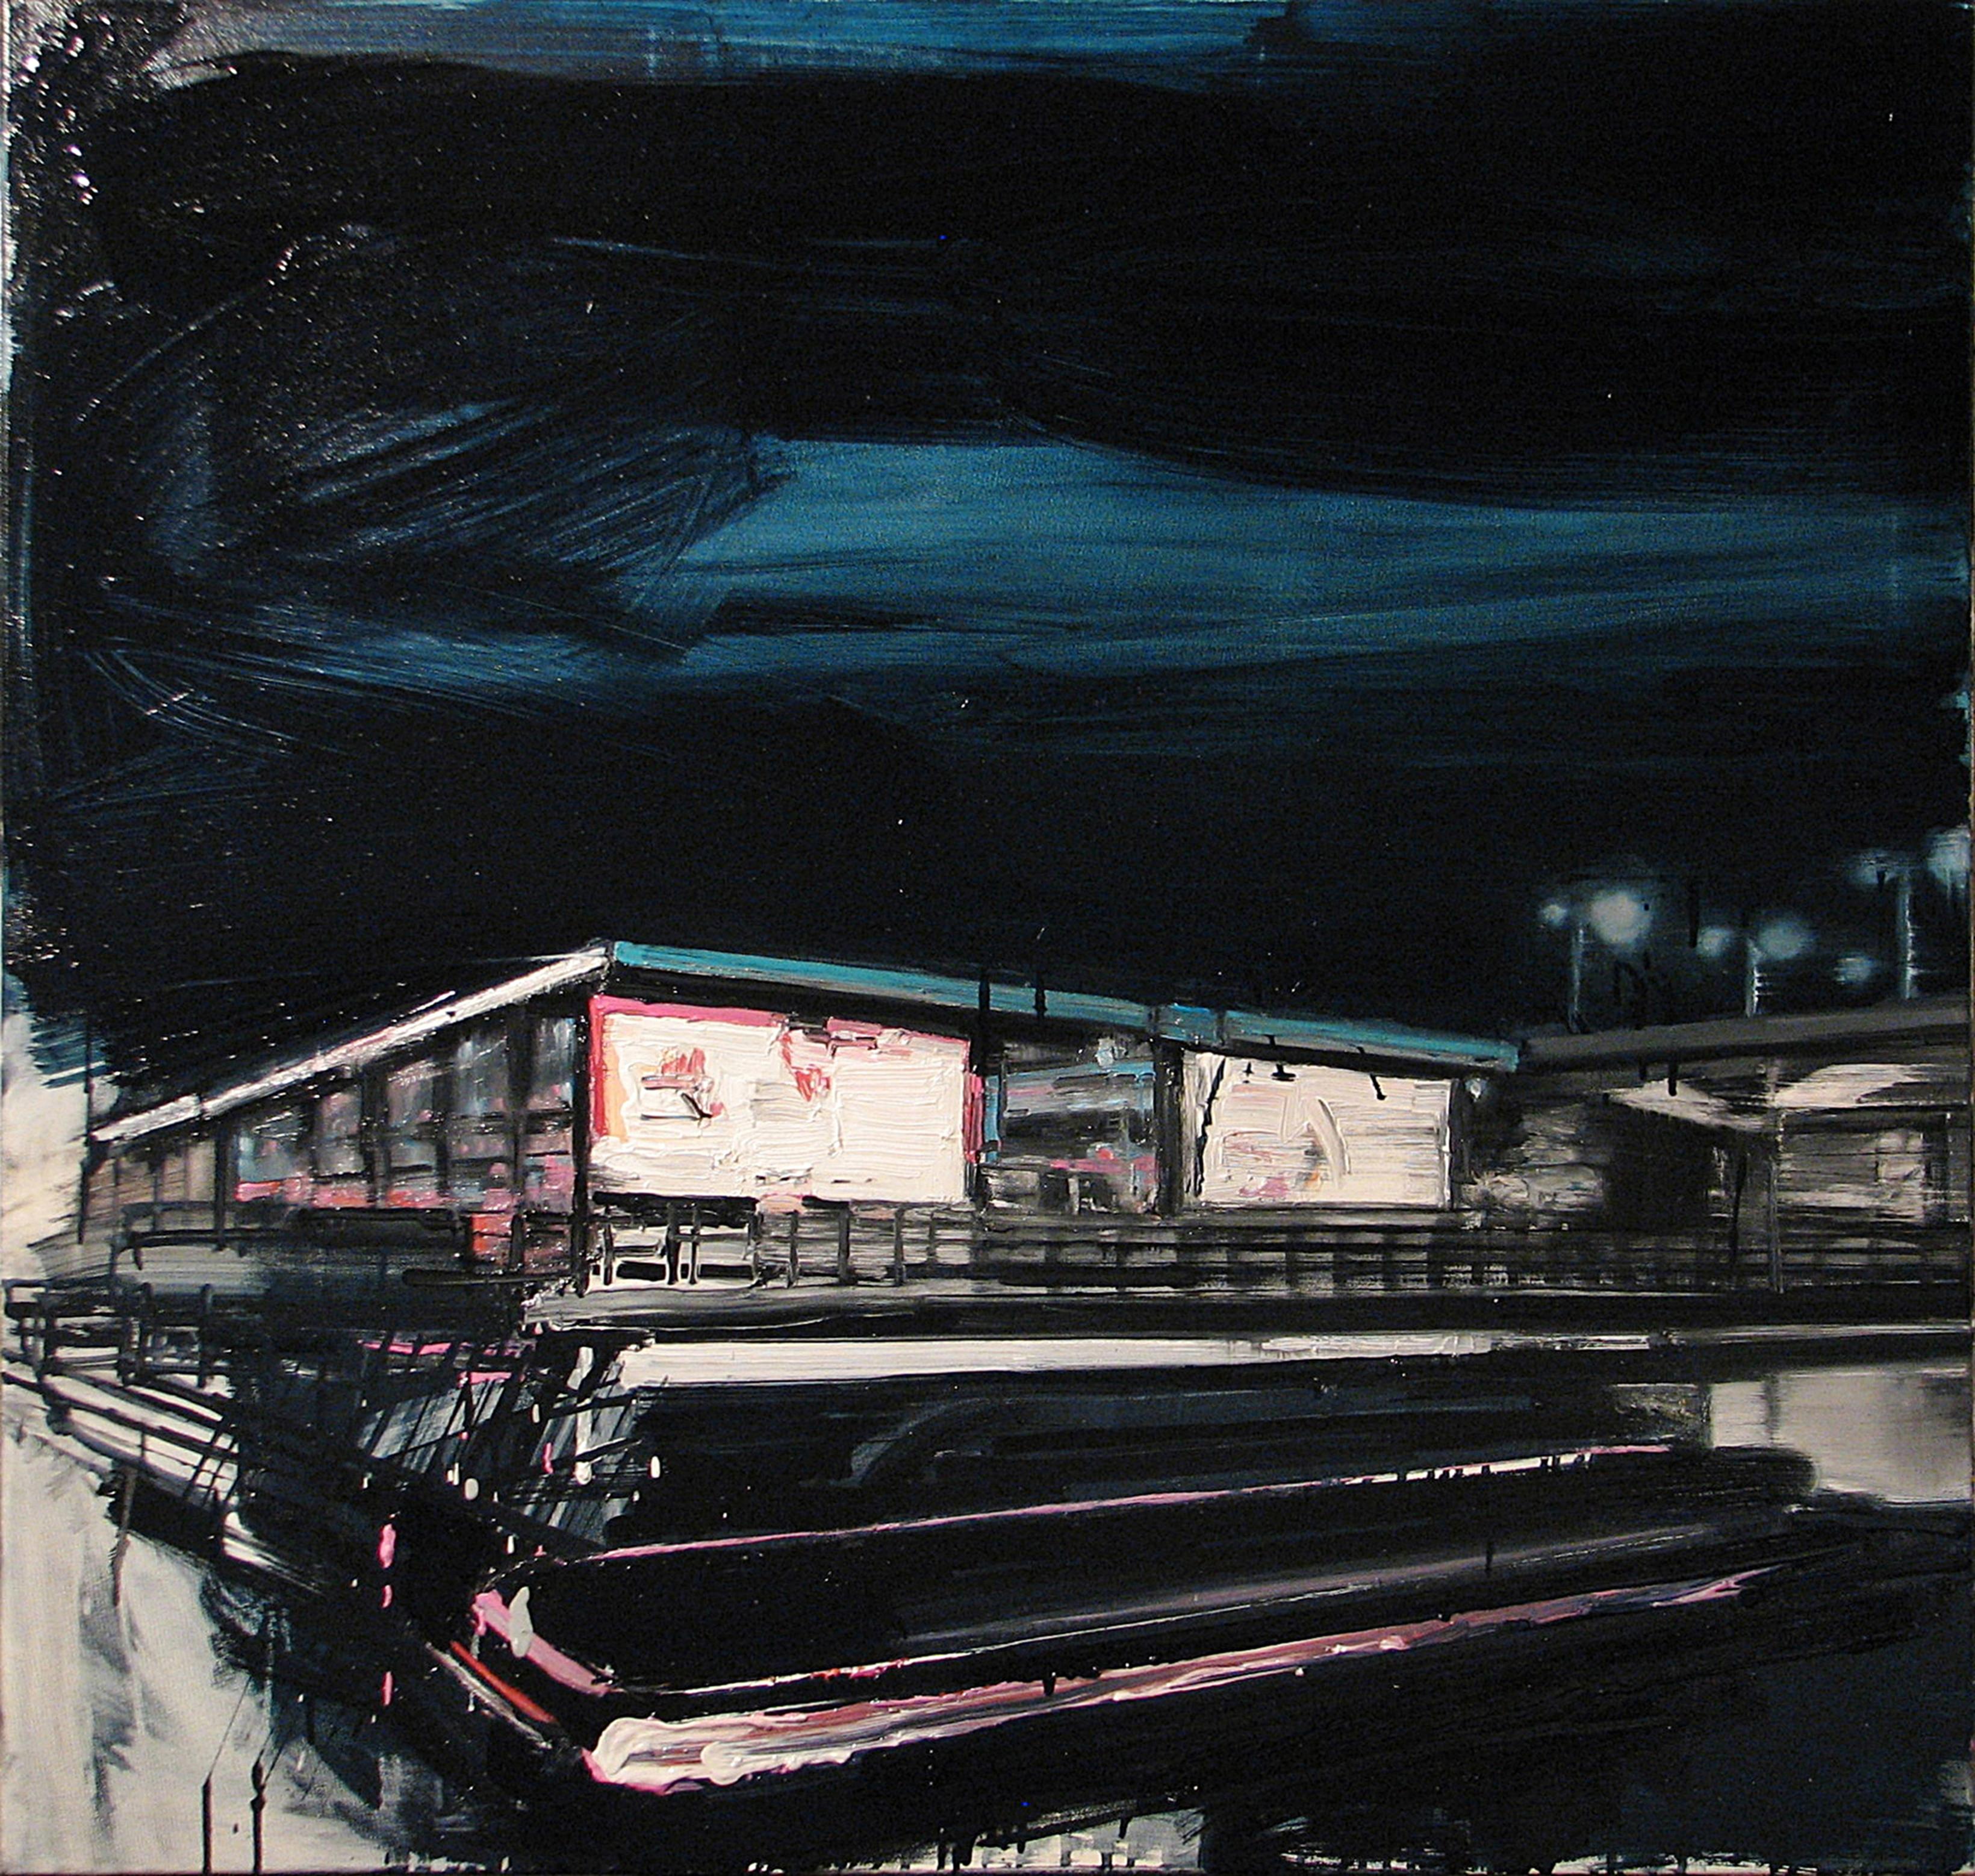 Landscape Painting Robert Bubel - Lights d'amarrage sur les gares - Peinture à l'huile contemporaine expressive